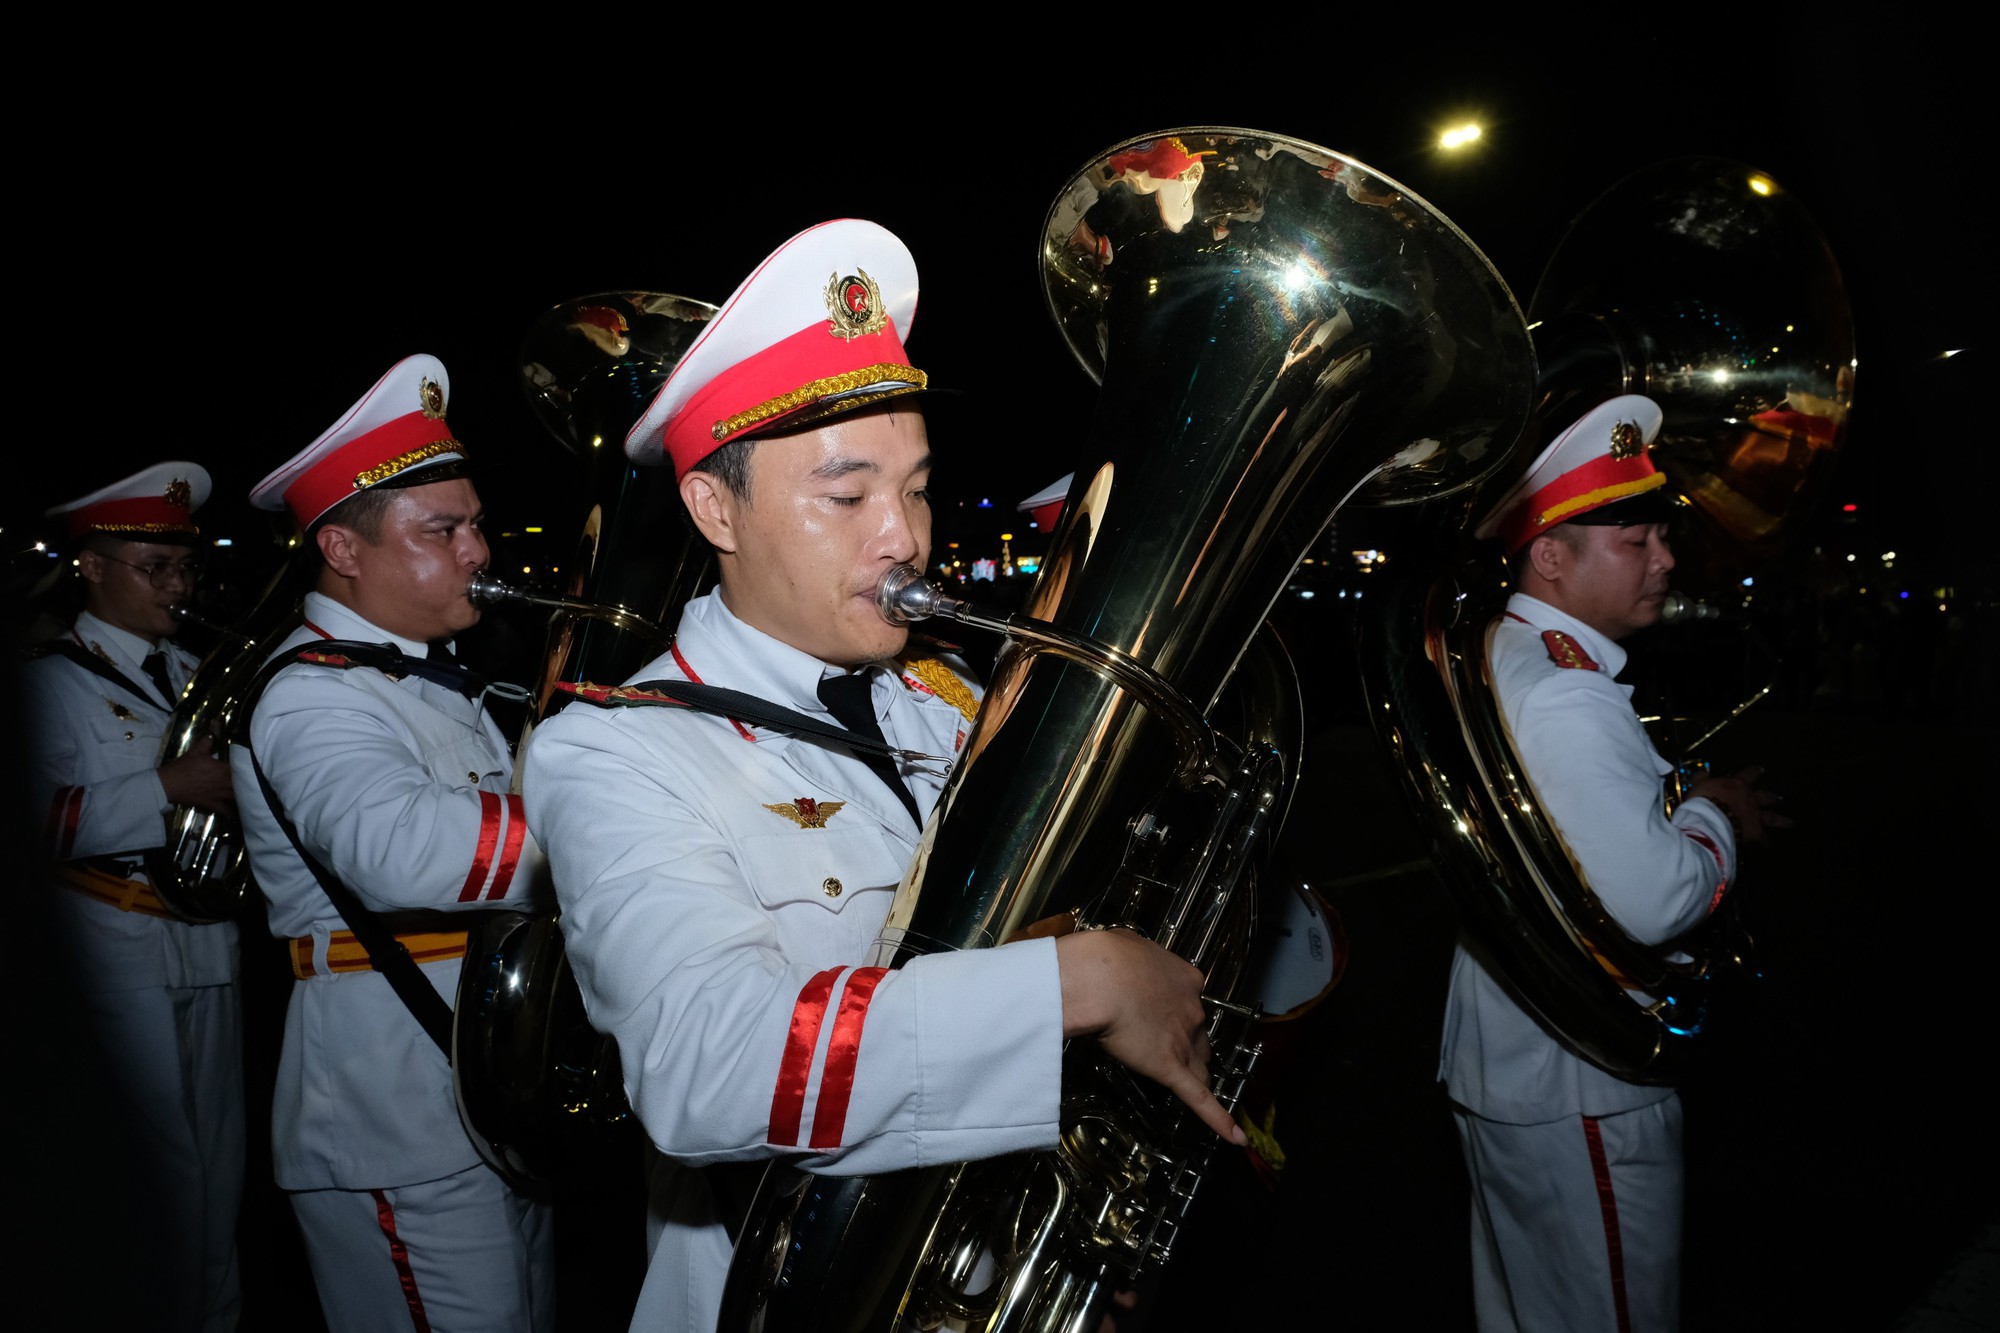 Đoàn nghi lễ Công an nhân dân biểu diễn trên đường phố Đà Nẵng - Ảnh 3.